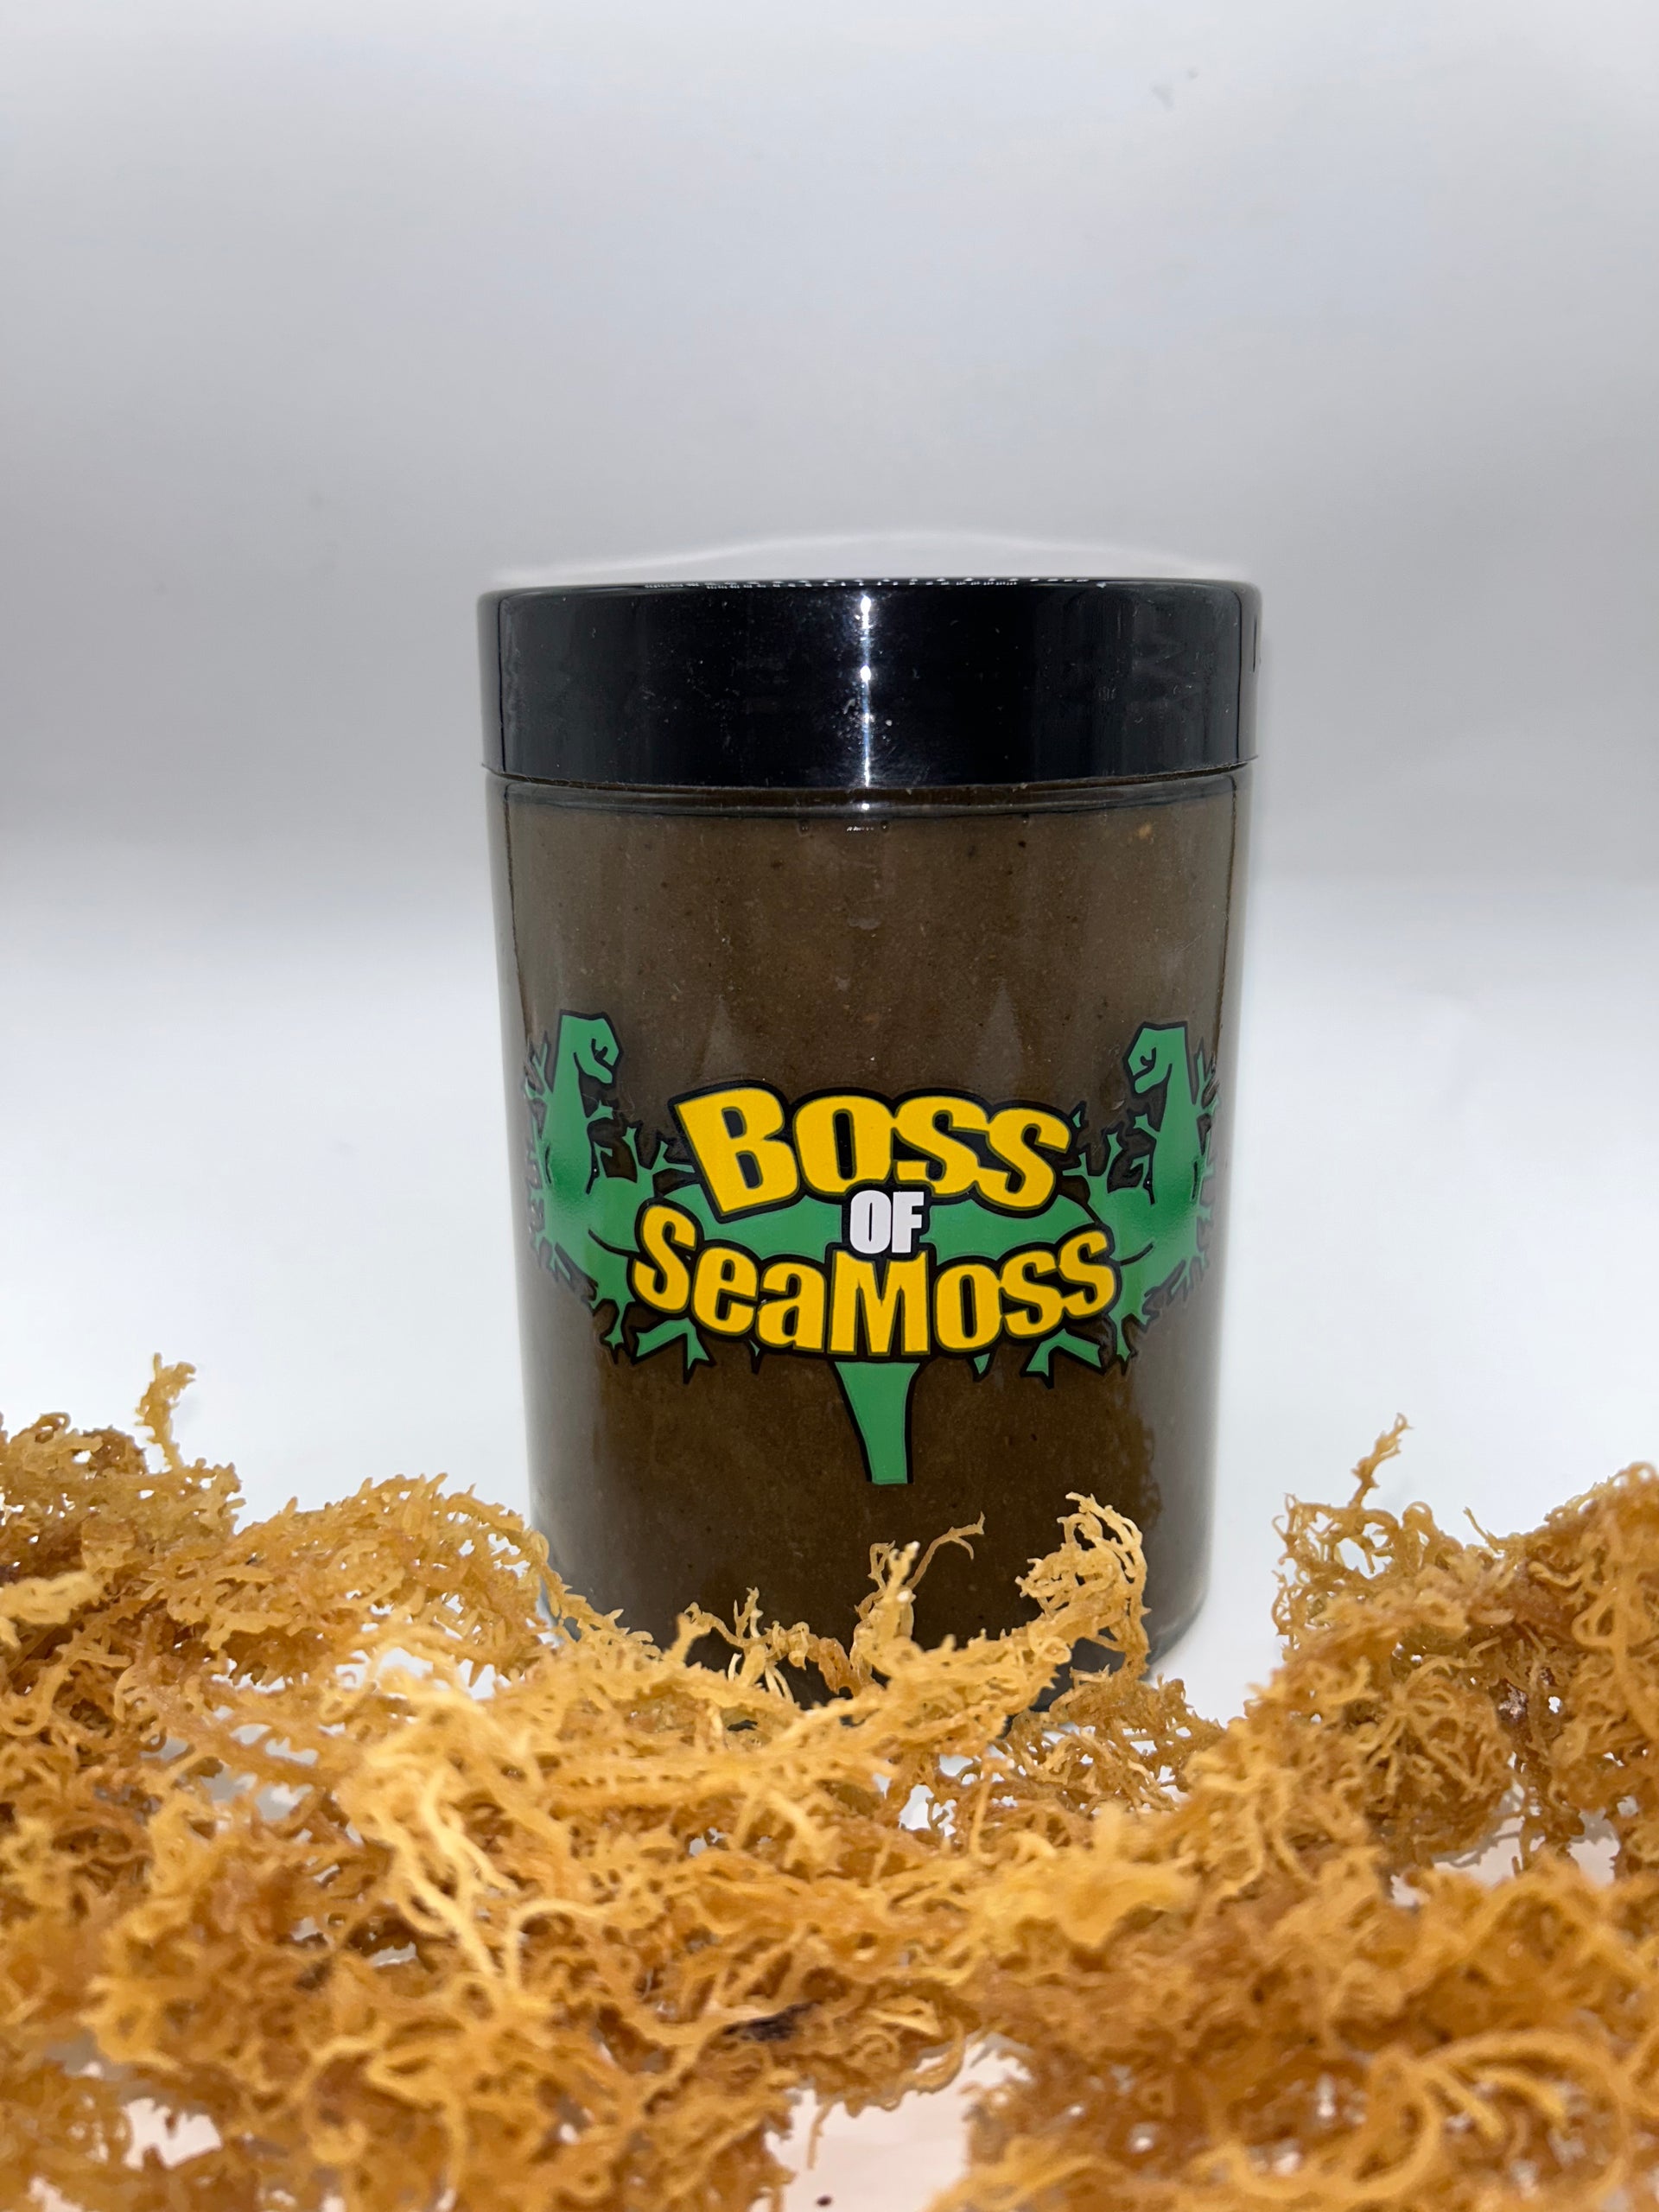 SuperBoss Moss – Original Seamoss Boss